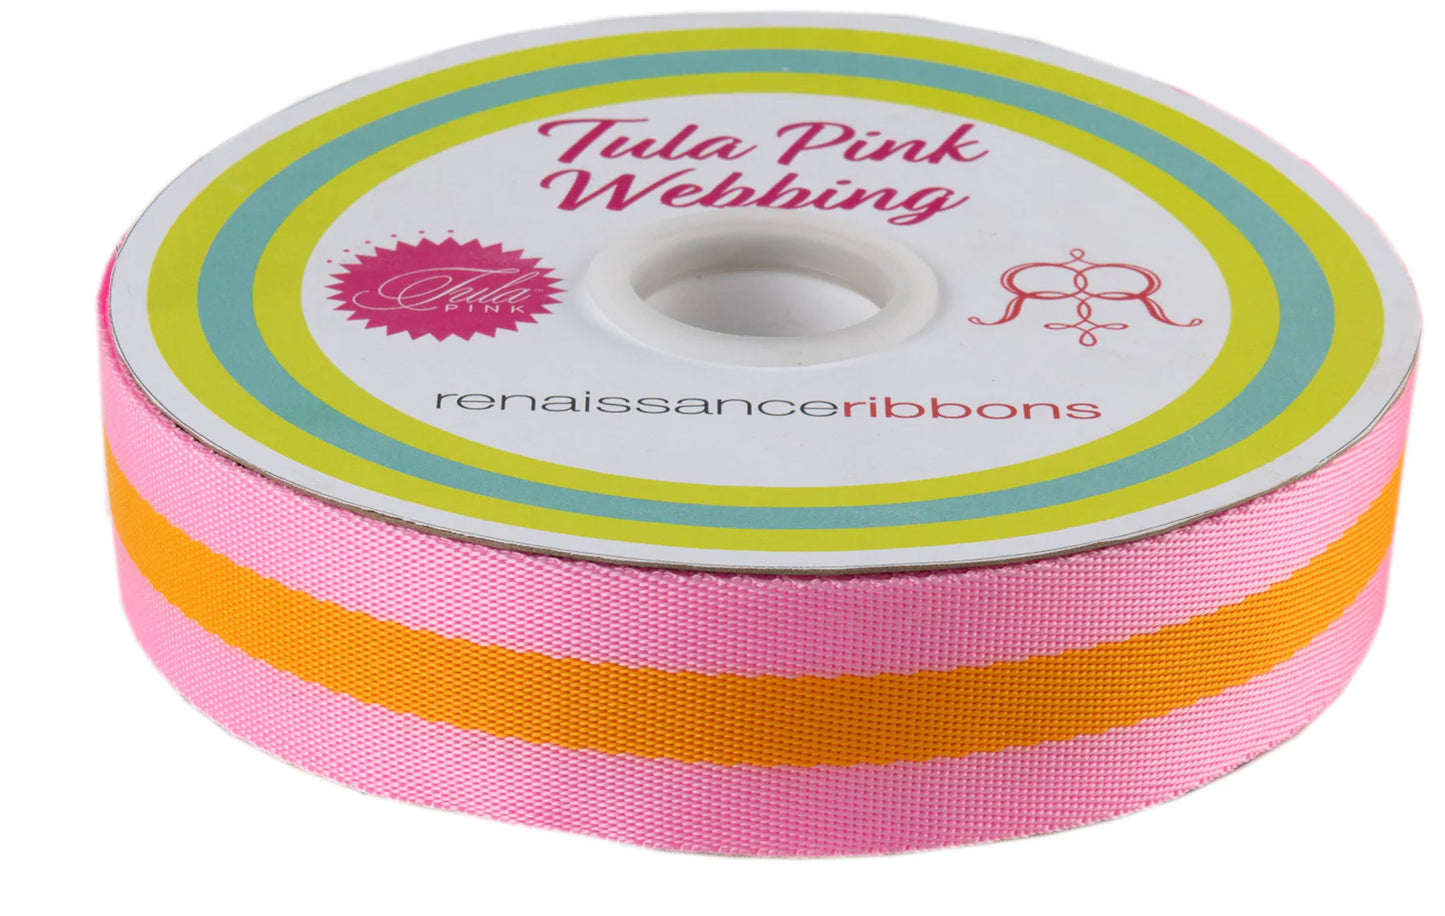 spool of tula pink 1.5" nylon webbing, in pink + orange colorway